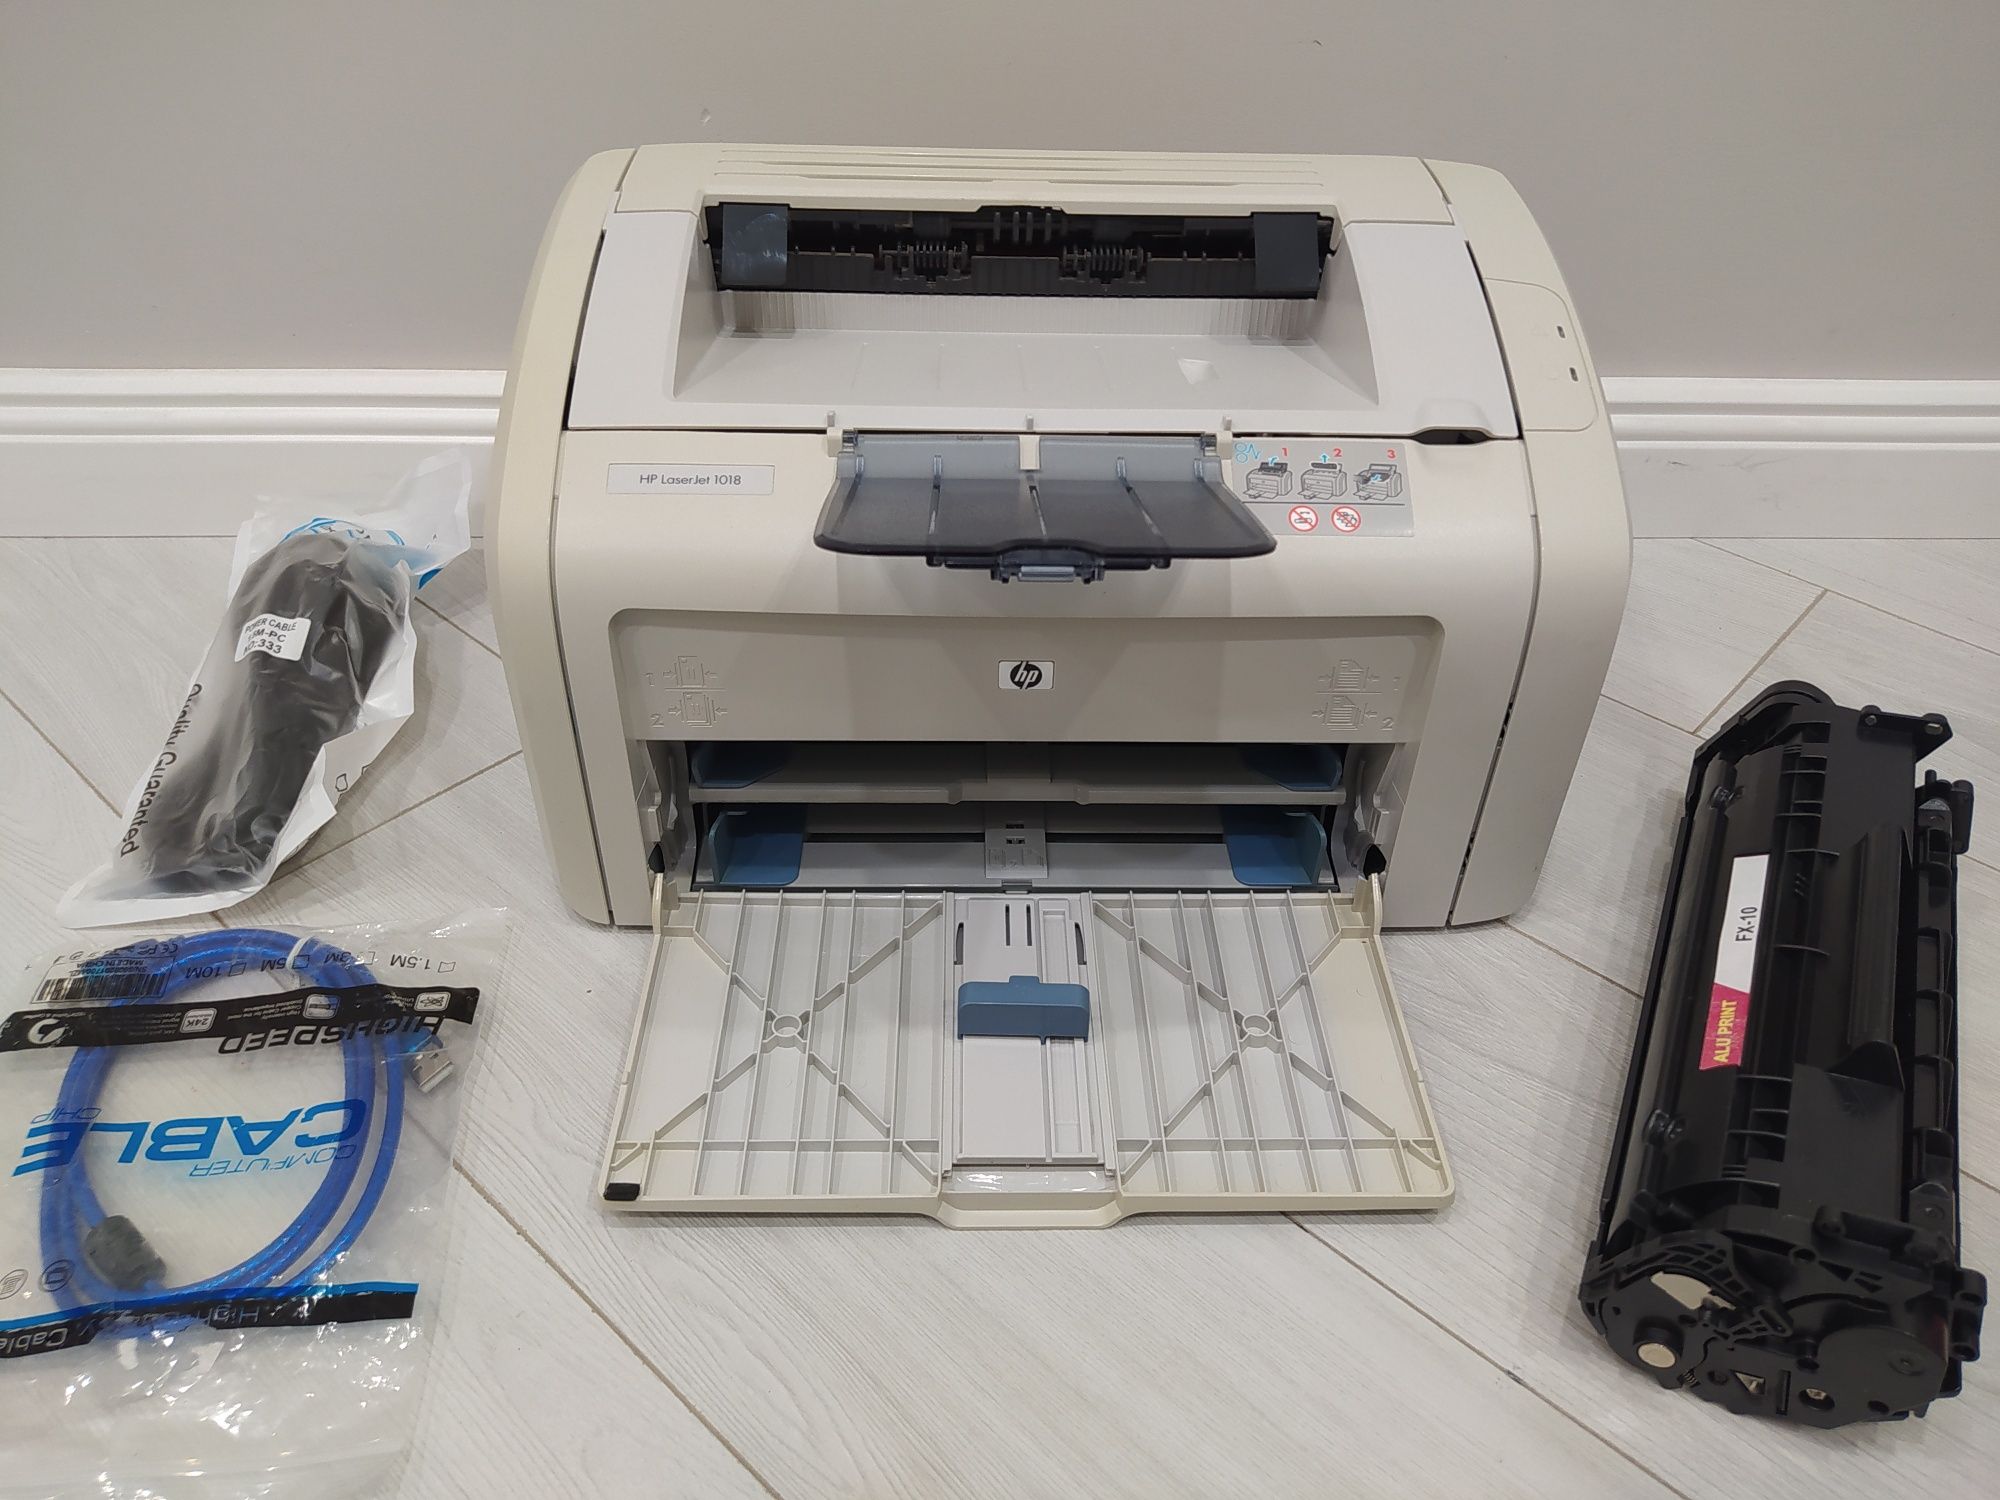 Лазерный принтер НР laserjet 1018